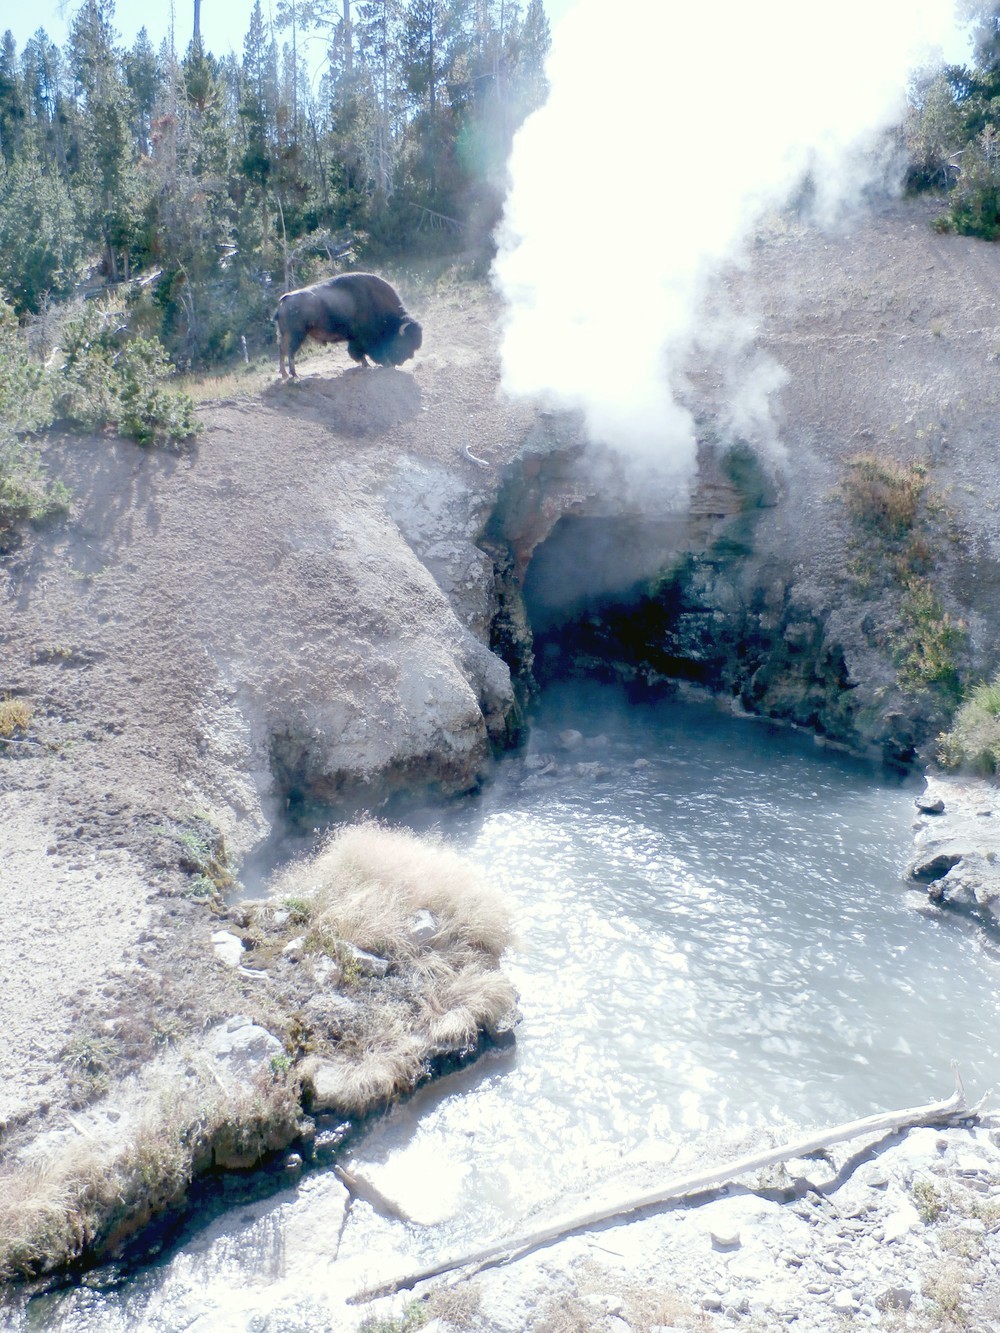 Odvážny (alebo bláznivý?) bizón si trúfol až na okraj útesu, pod ktorým vyviera vriaca voda. 